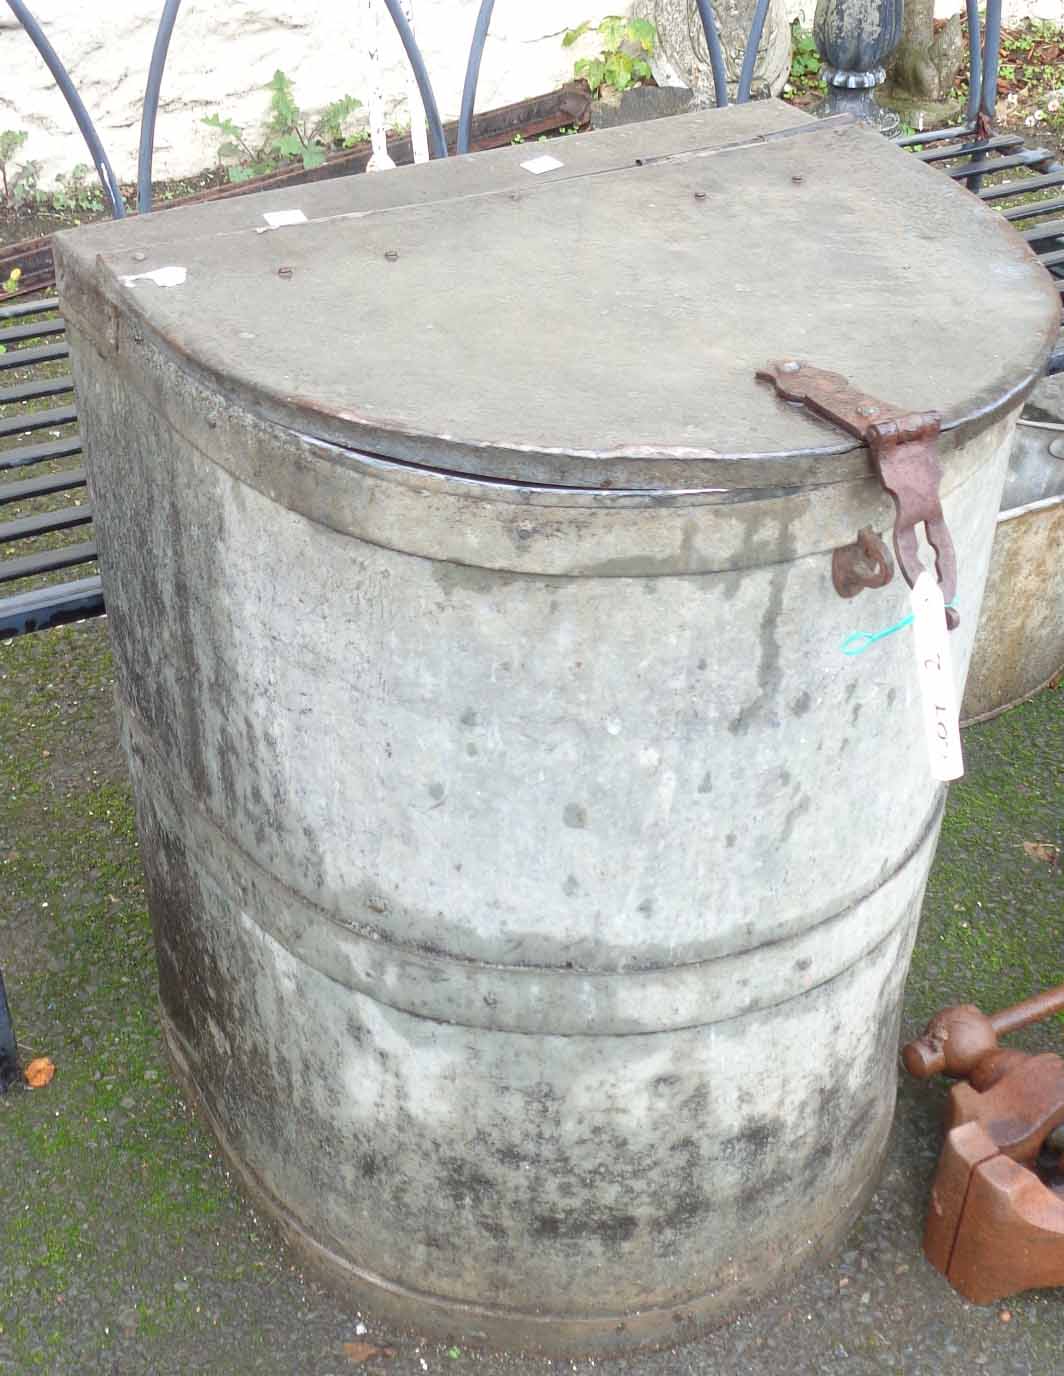 A galvanized grain bin